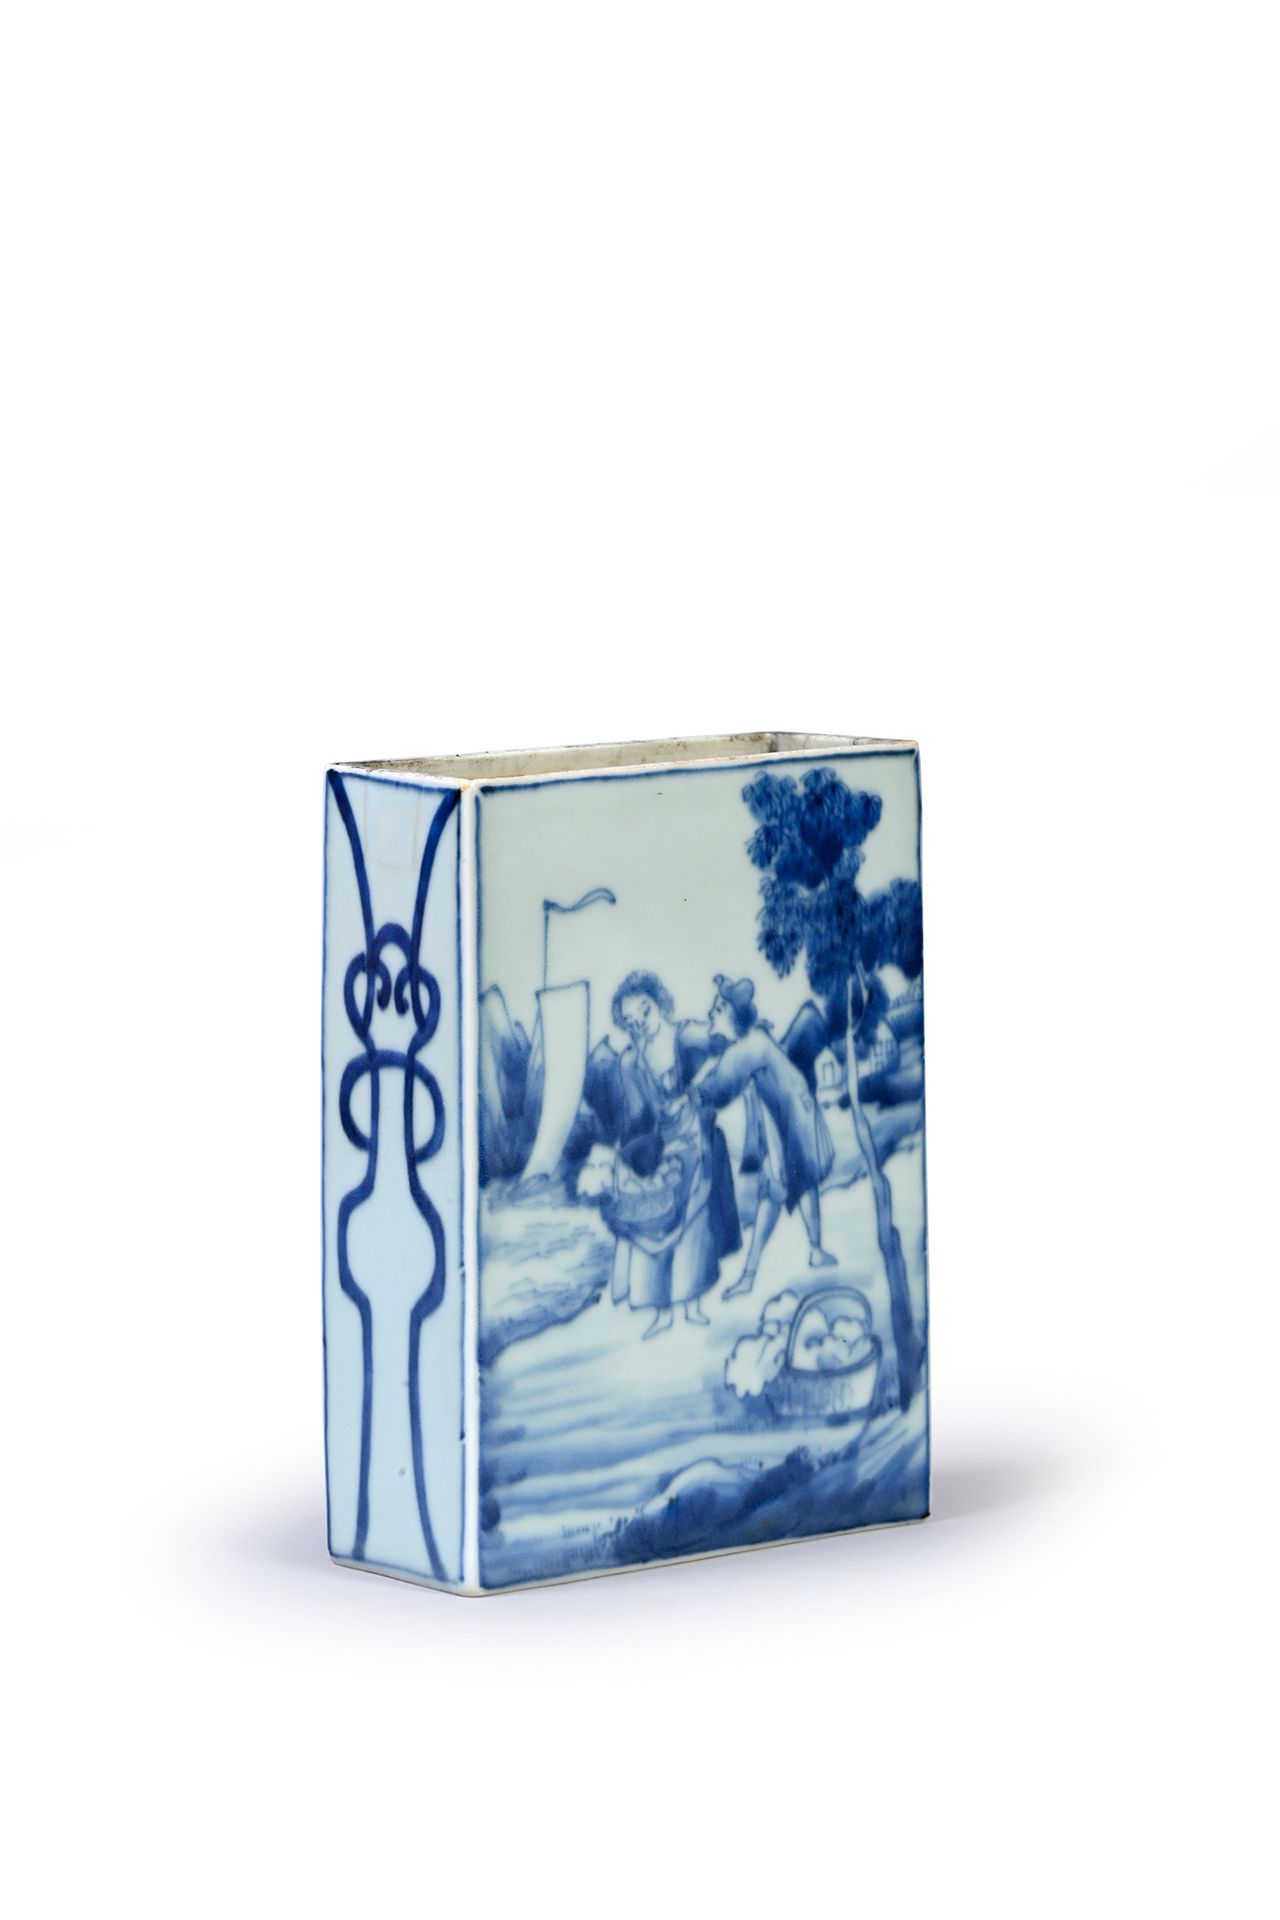 CHINE, dans le style du XVIIIe siècle 一个长方形的瓷瓶，一边是青花装饰的外国人物，可能是荷兰人。
一面是一对拿着篮子的农民&hellip;